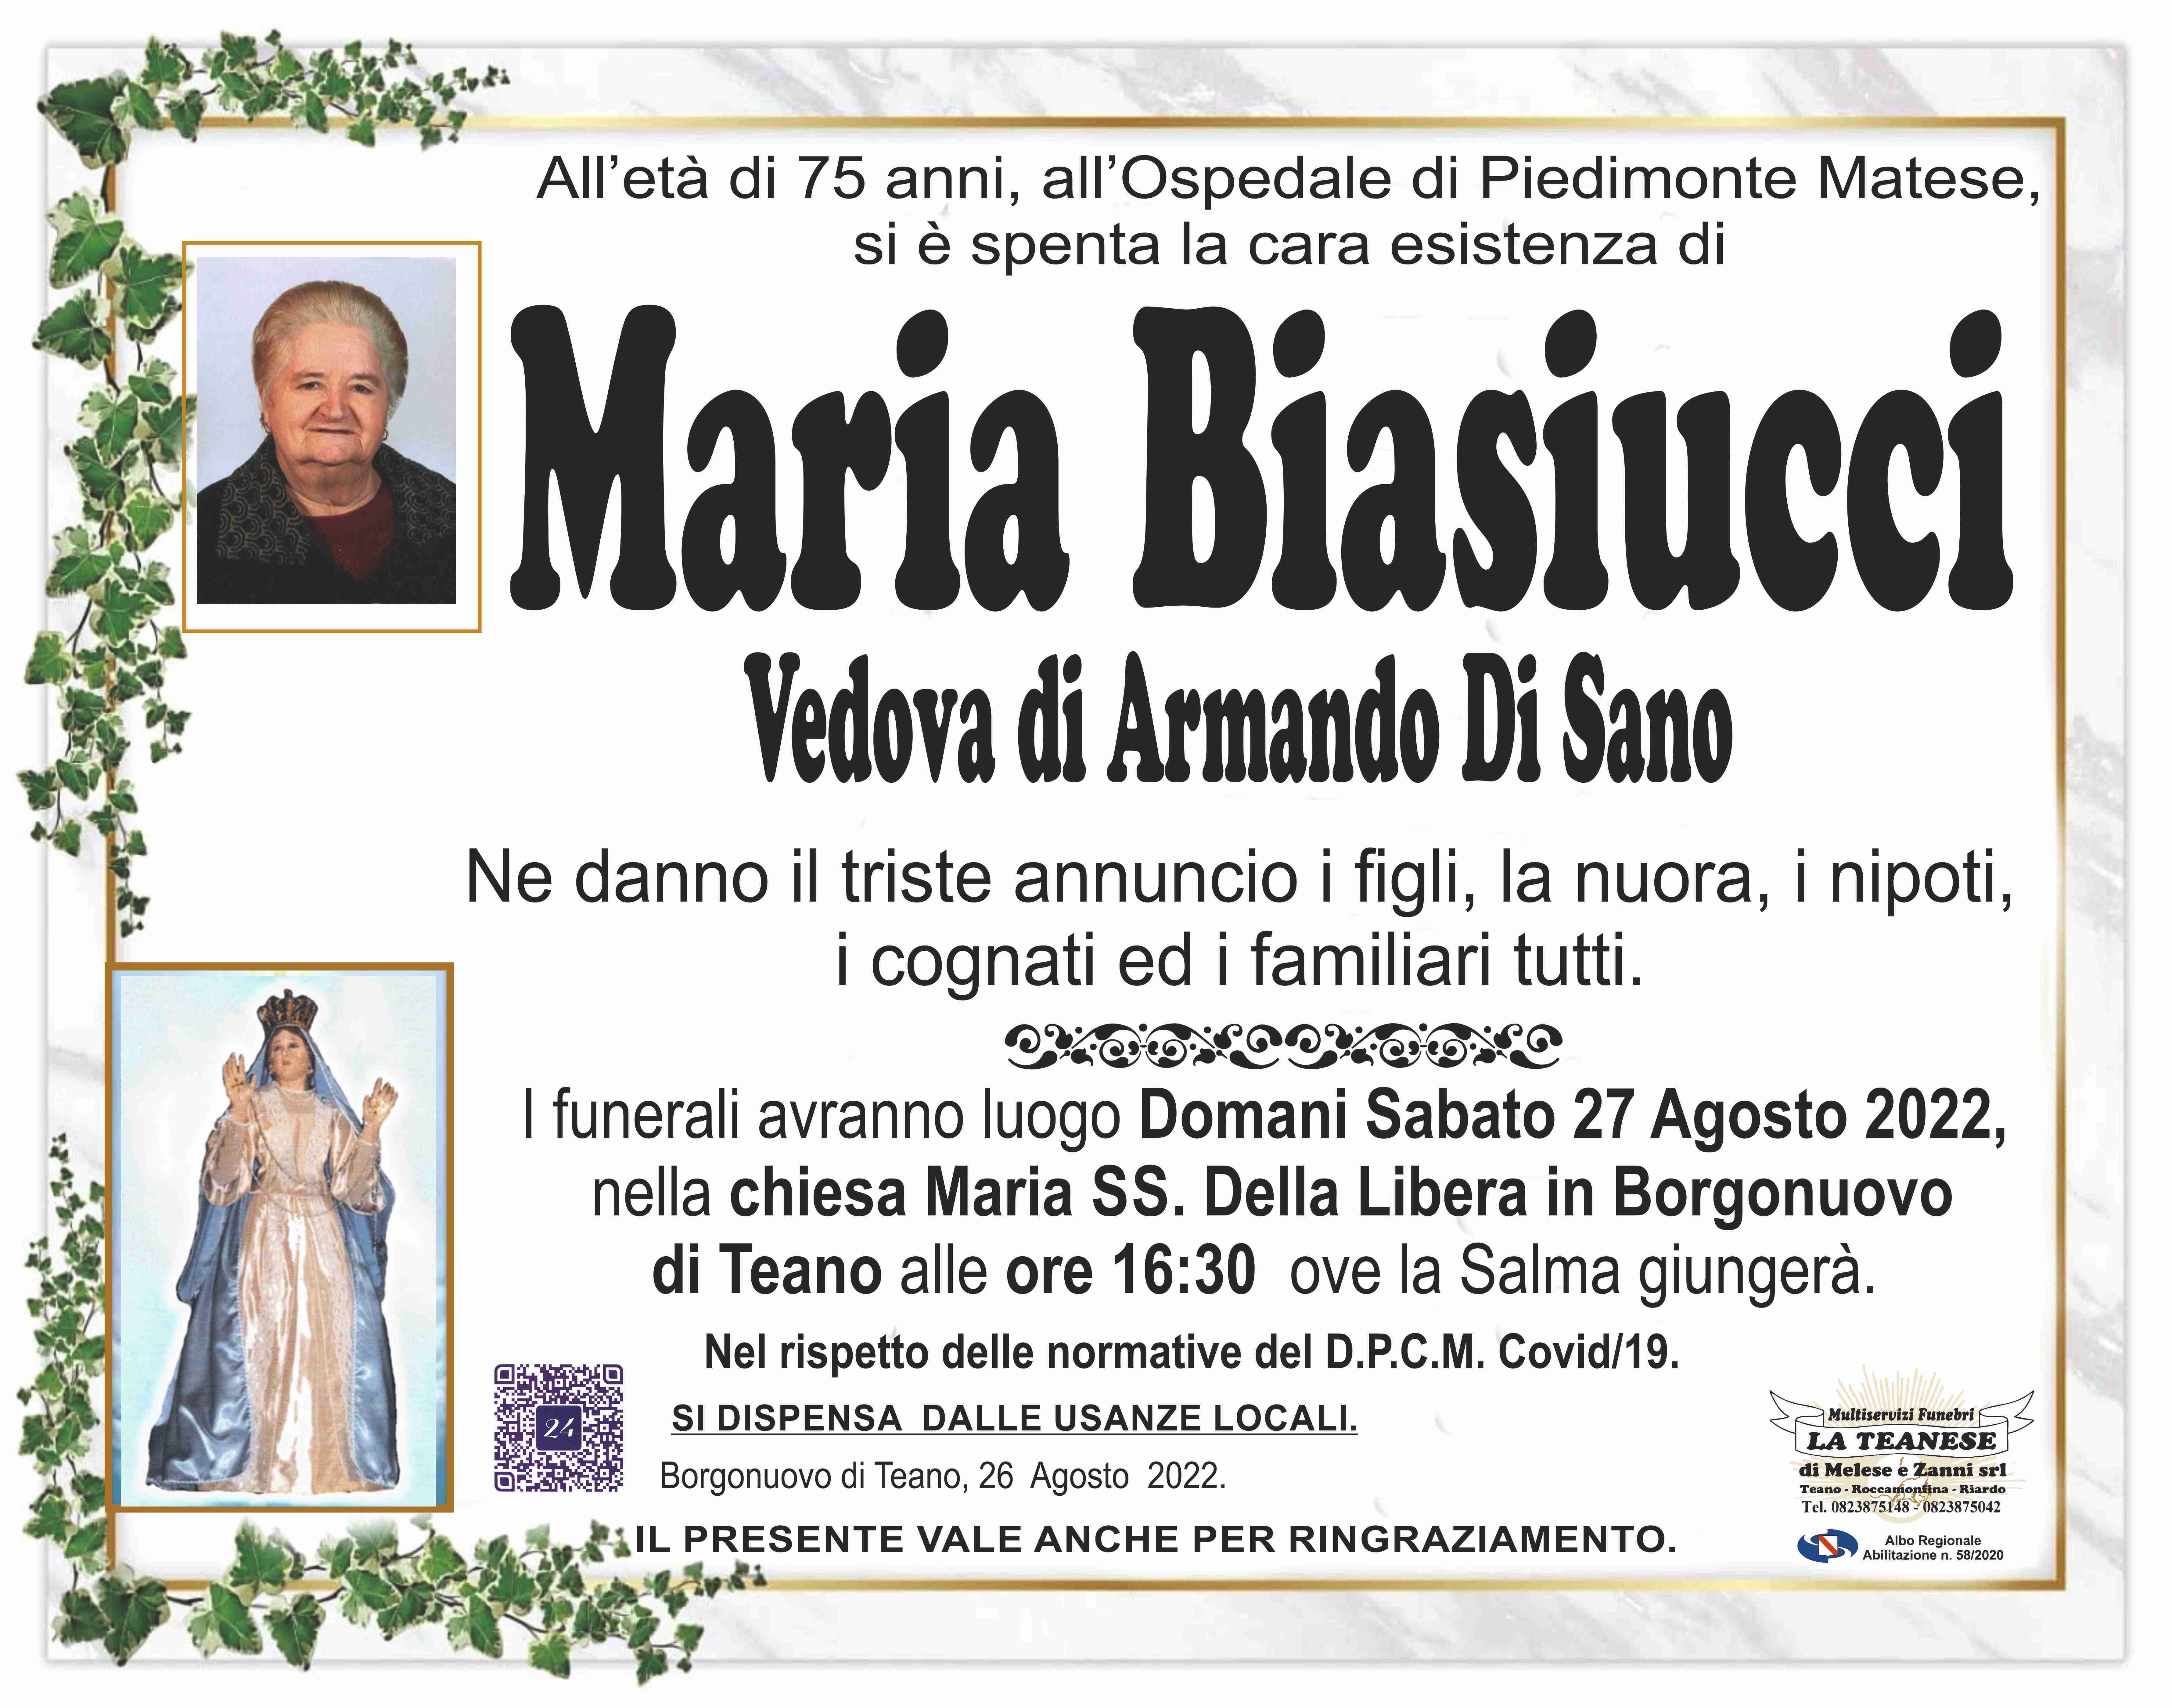 Maria Biasucci